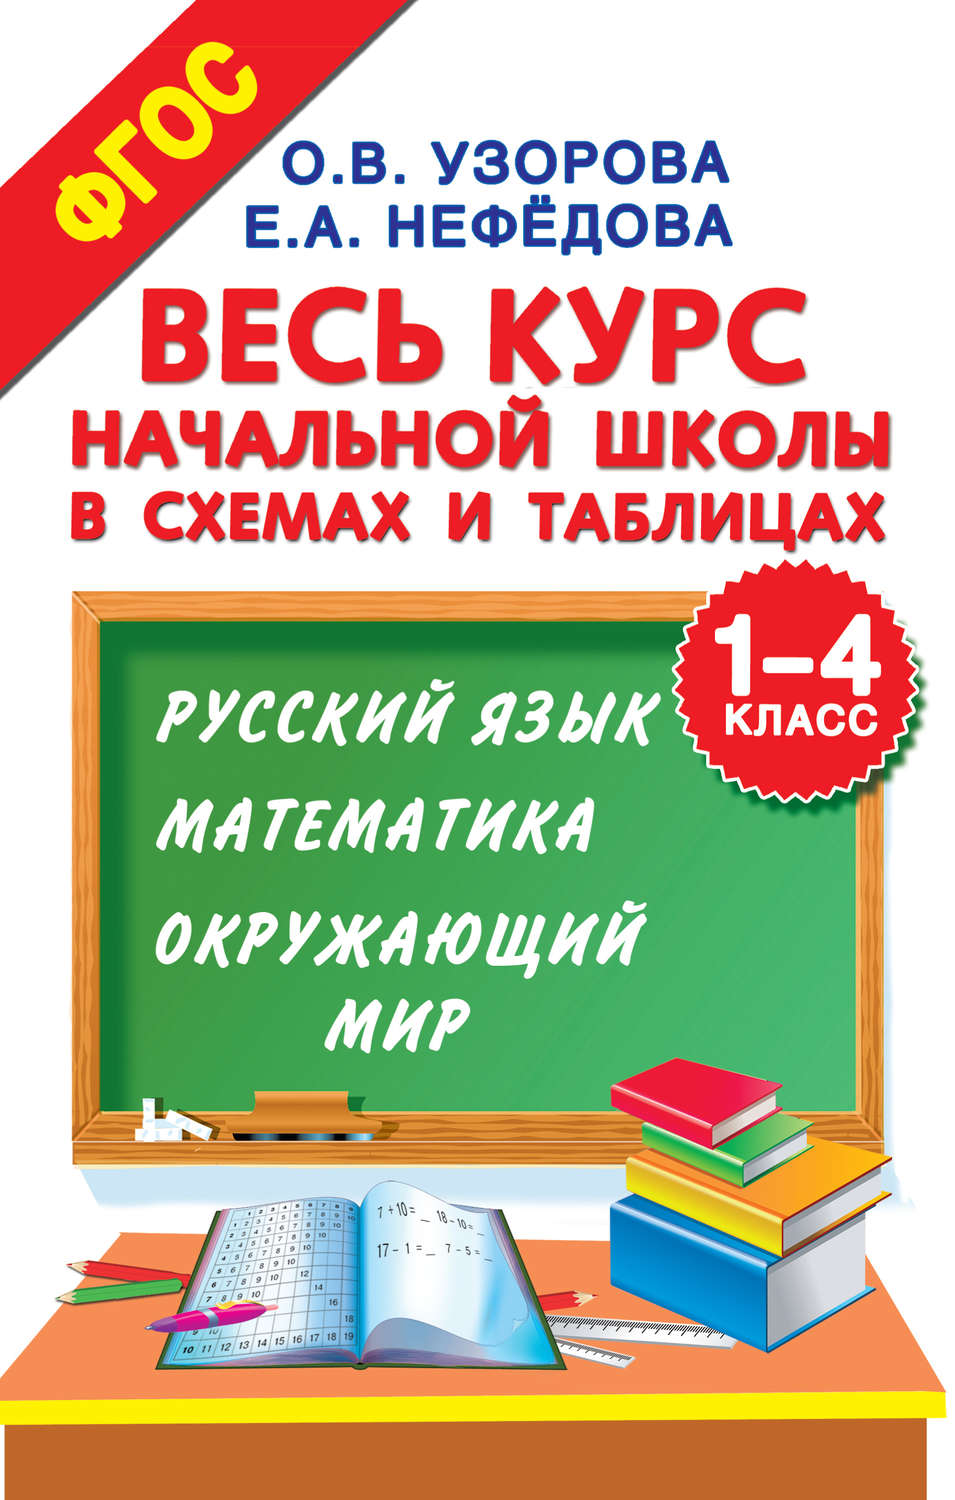 Смотреть онлайн бесплатно учебник по русской литературе для 6 класса белорусская школа